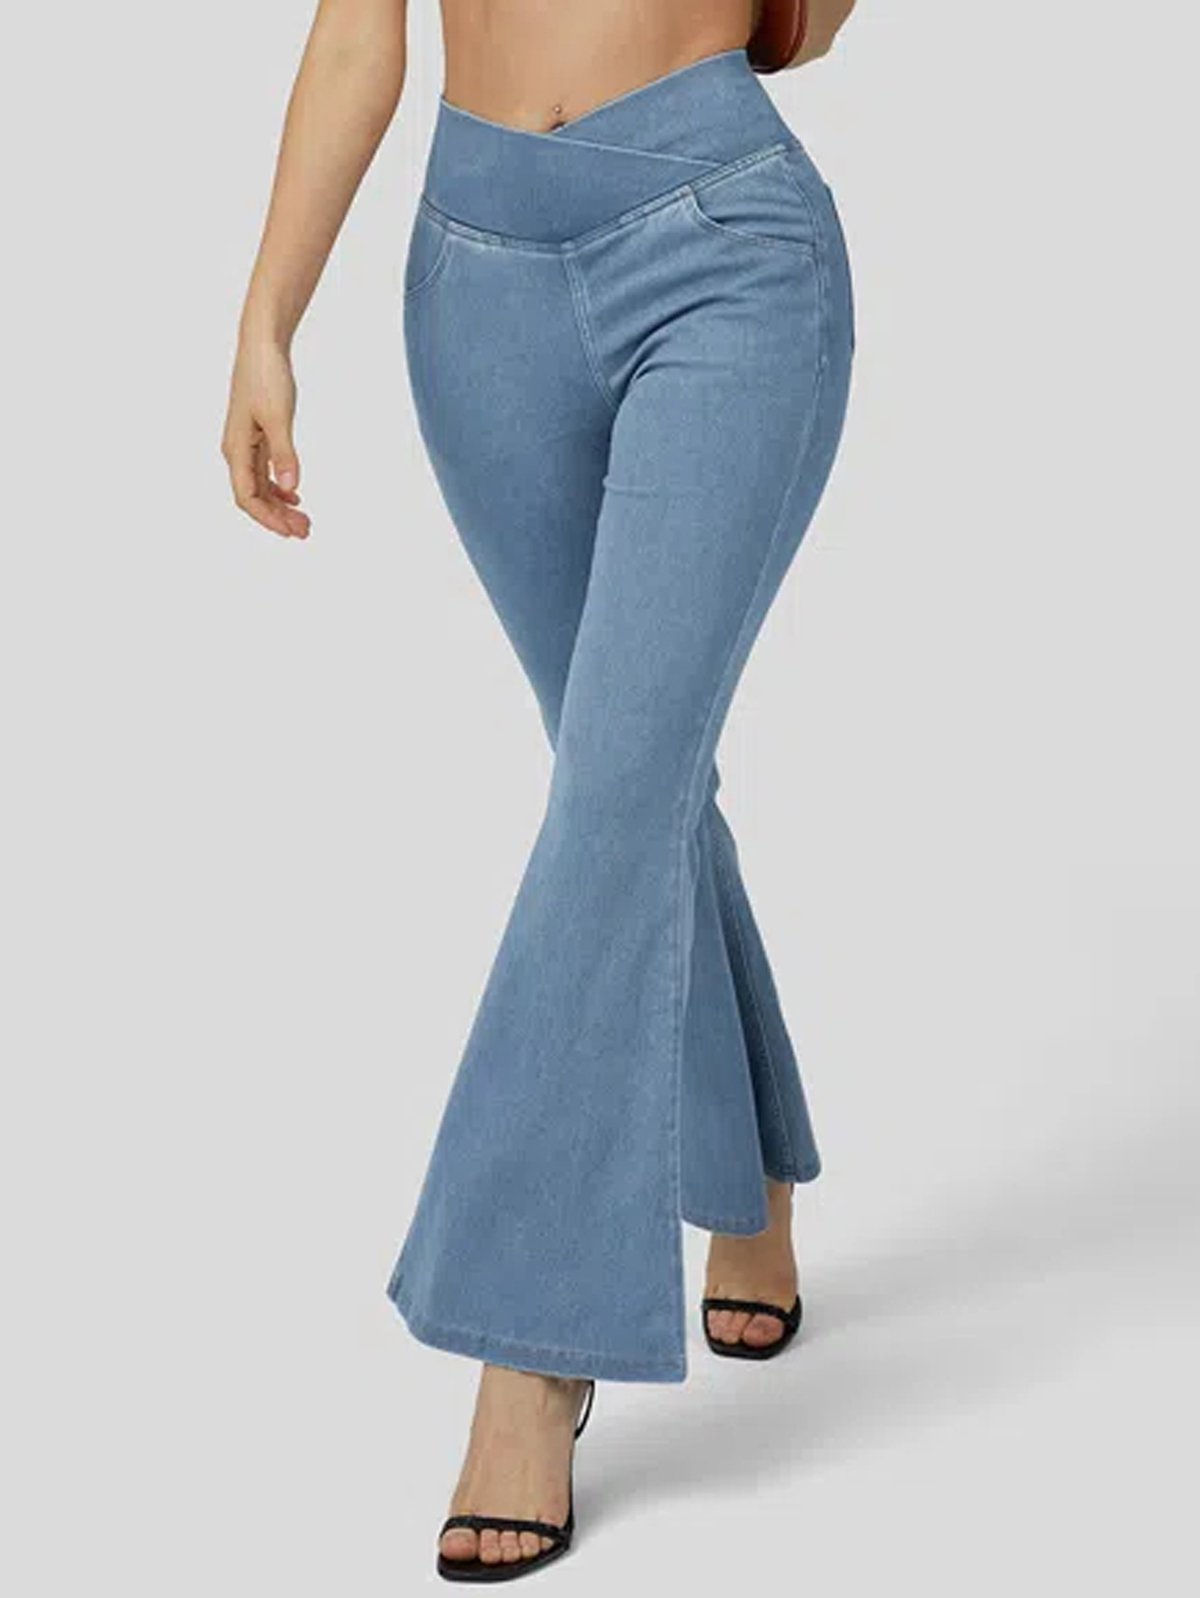 Plain Casual Jeans